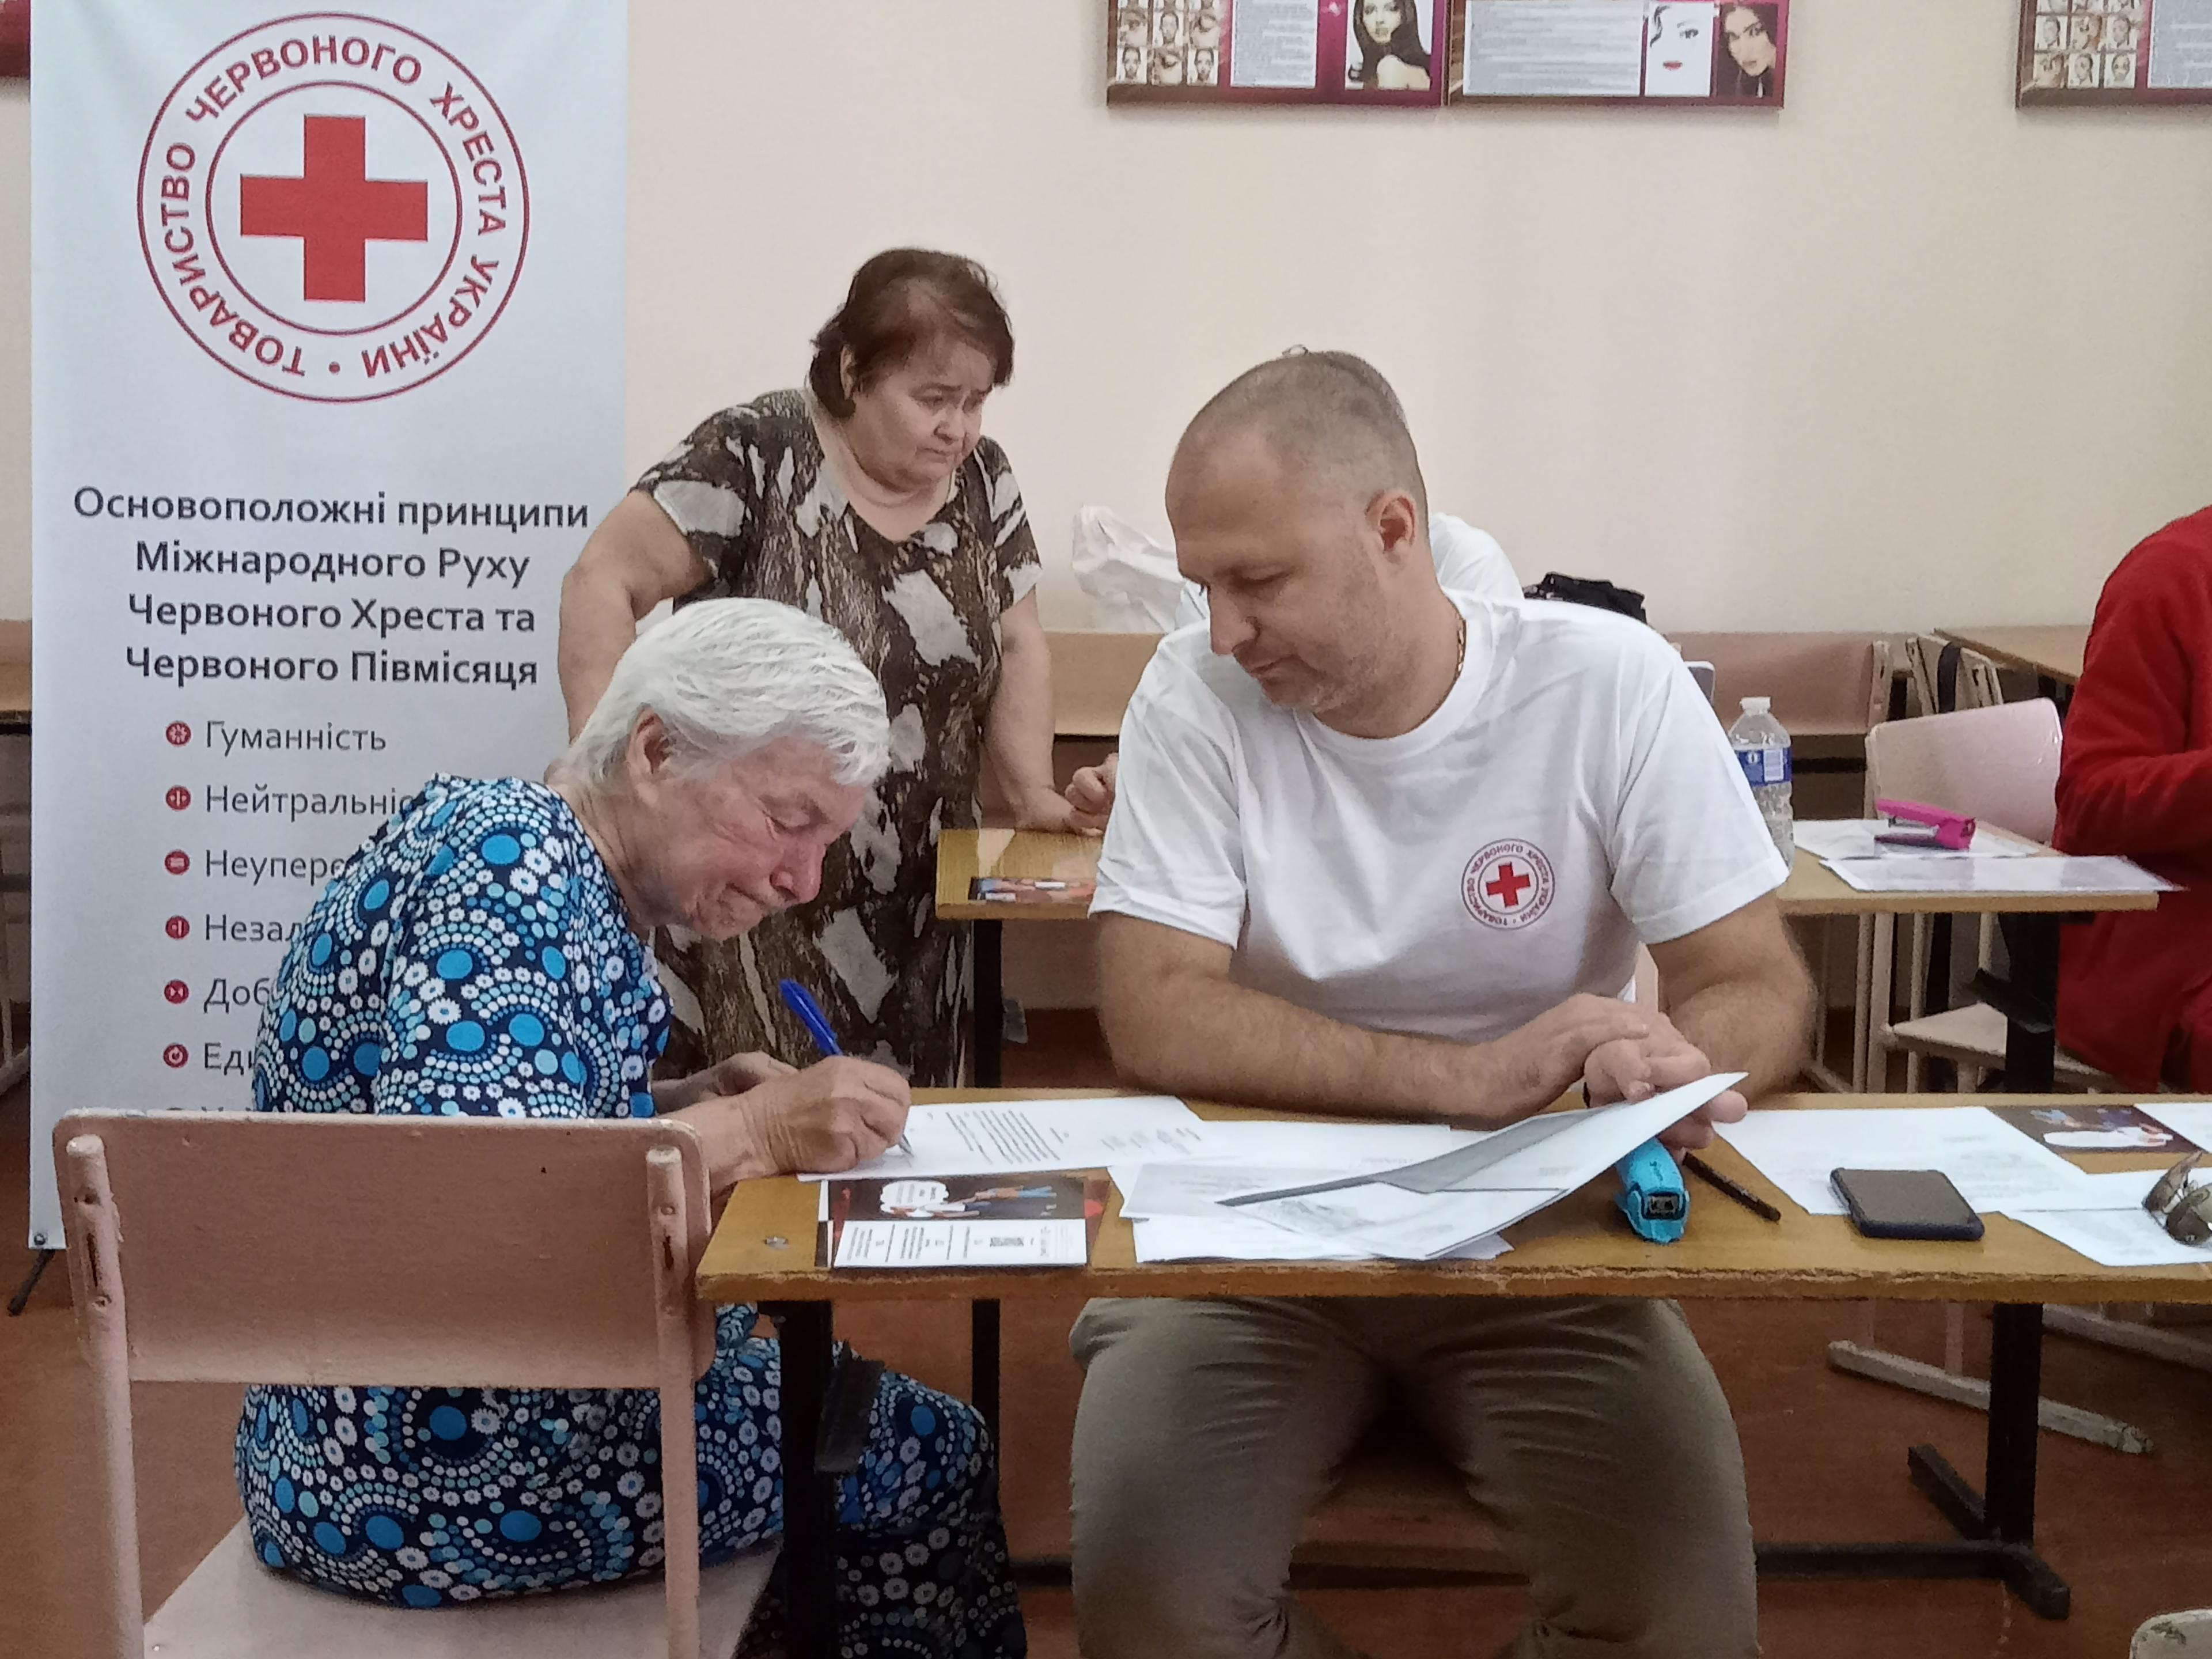 Eine ältere Frau sitzt an einem Tisch und füllt Dokumente aus. An ihrer Seite sitzt ein Mann, der einige Dokumente hält. Er trägt ein T-Shirt mit dem Logo des Roten Kreuzes. Der Mann scheint der Frau beim Ausfüllen der Dokumente zu helfen.